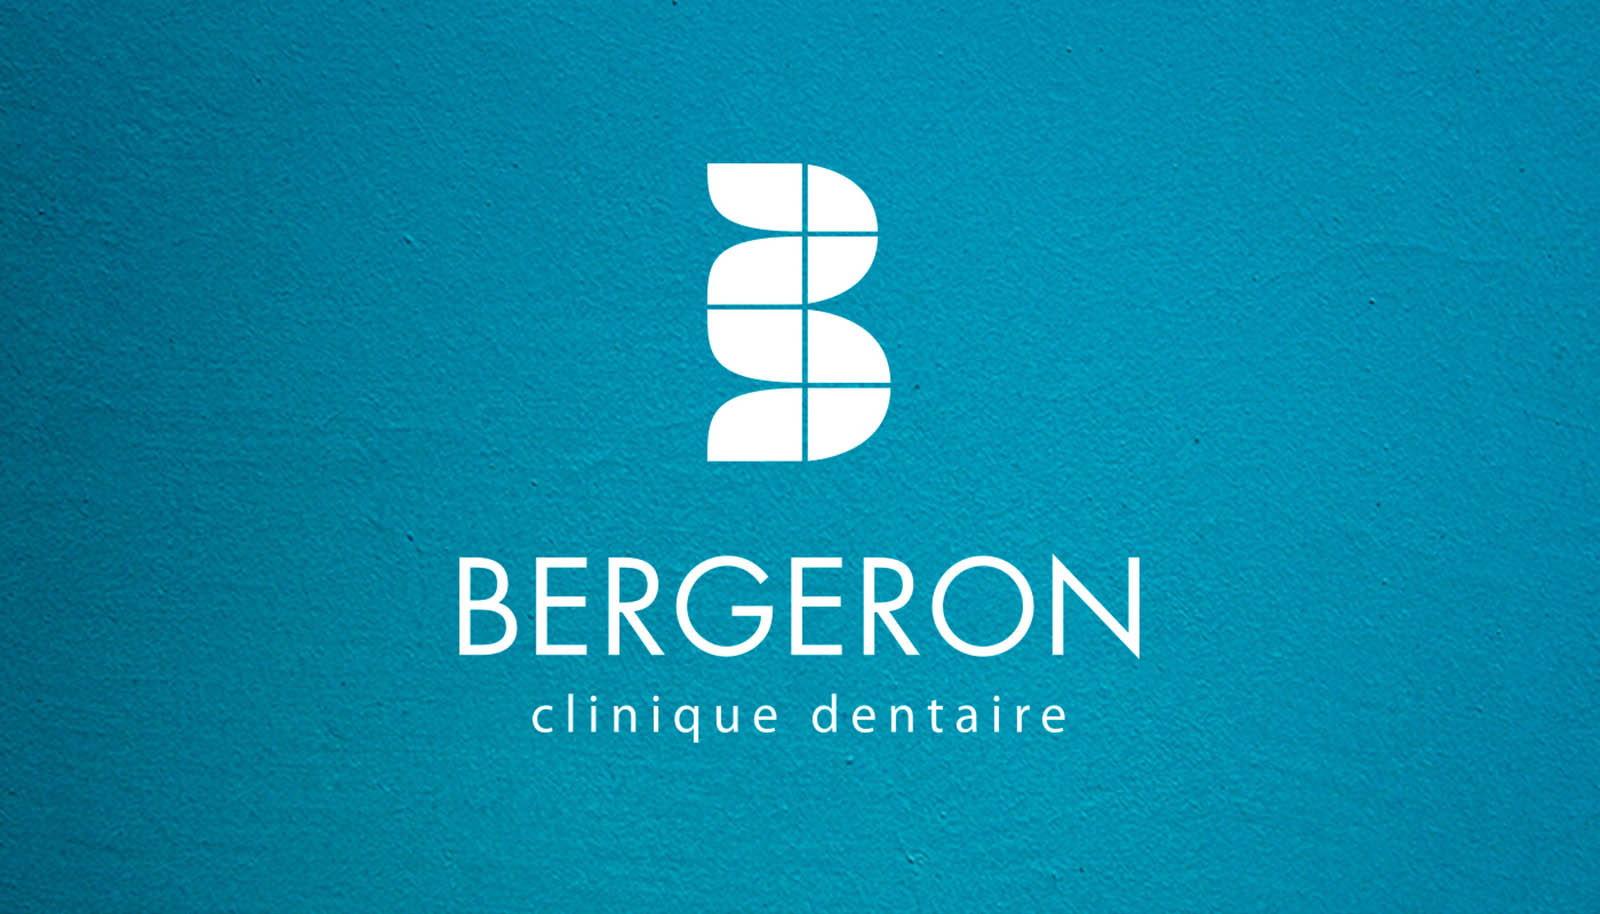 Clinique dentaire Bergeron - logo